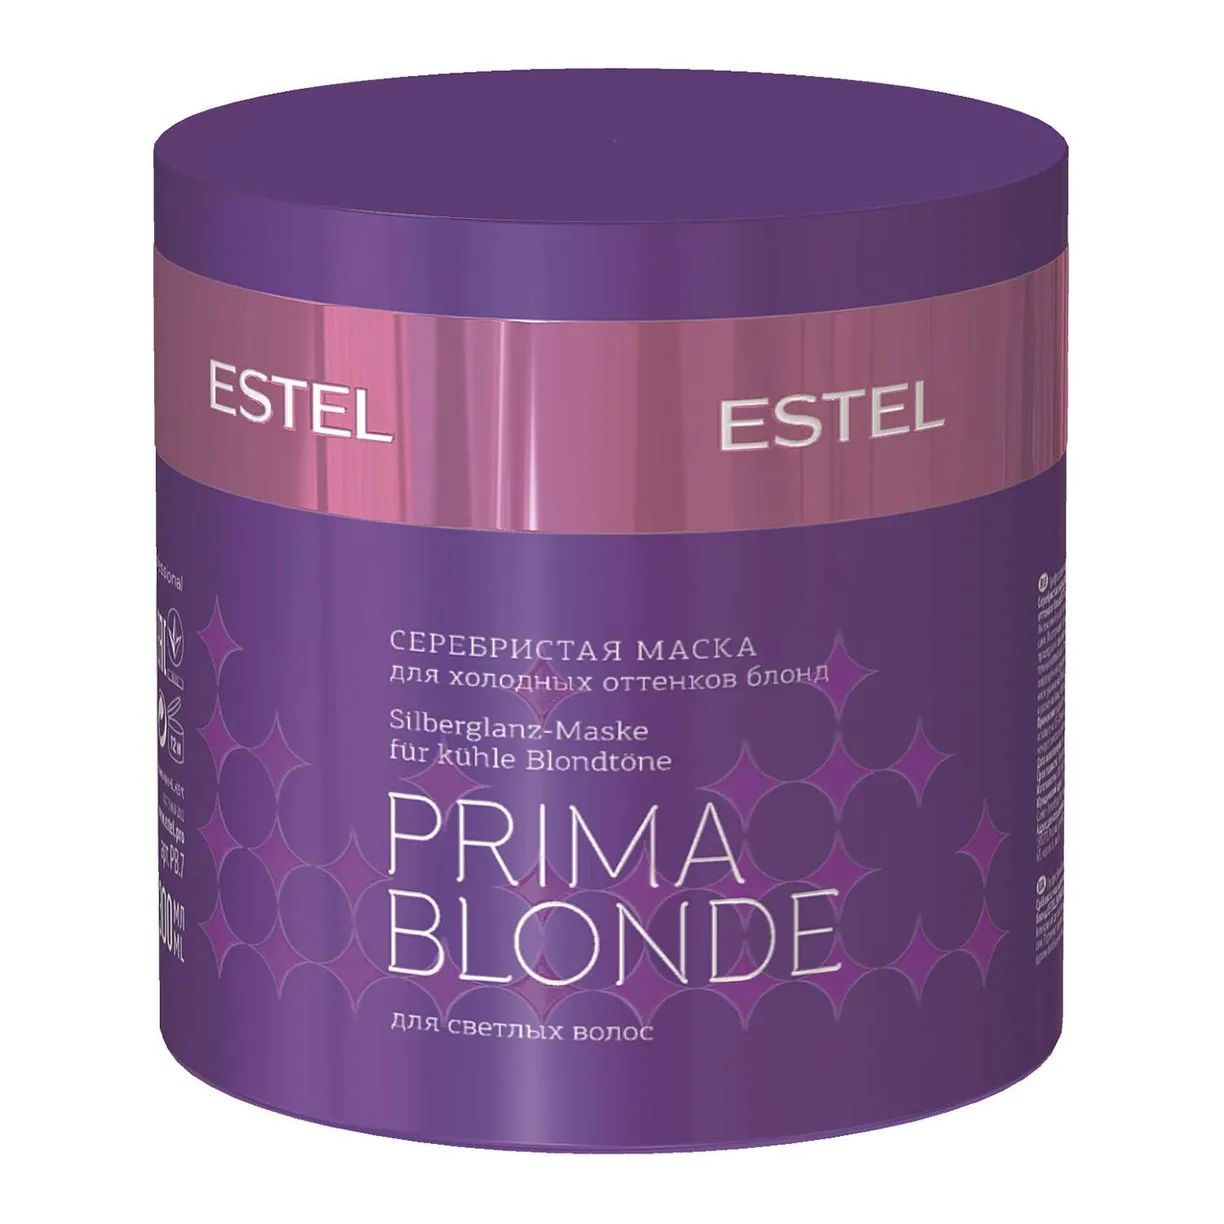 Маска для волос Estel Professional Prima Blonde Mask 300 мл набор для холодных оттенков блонд estel professional prima blonde 1000 и 1000 мл